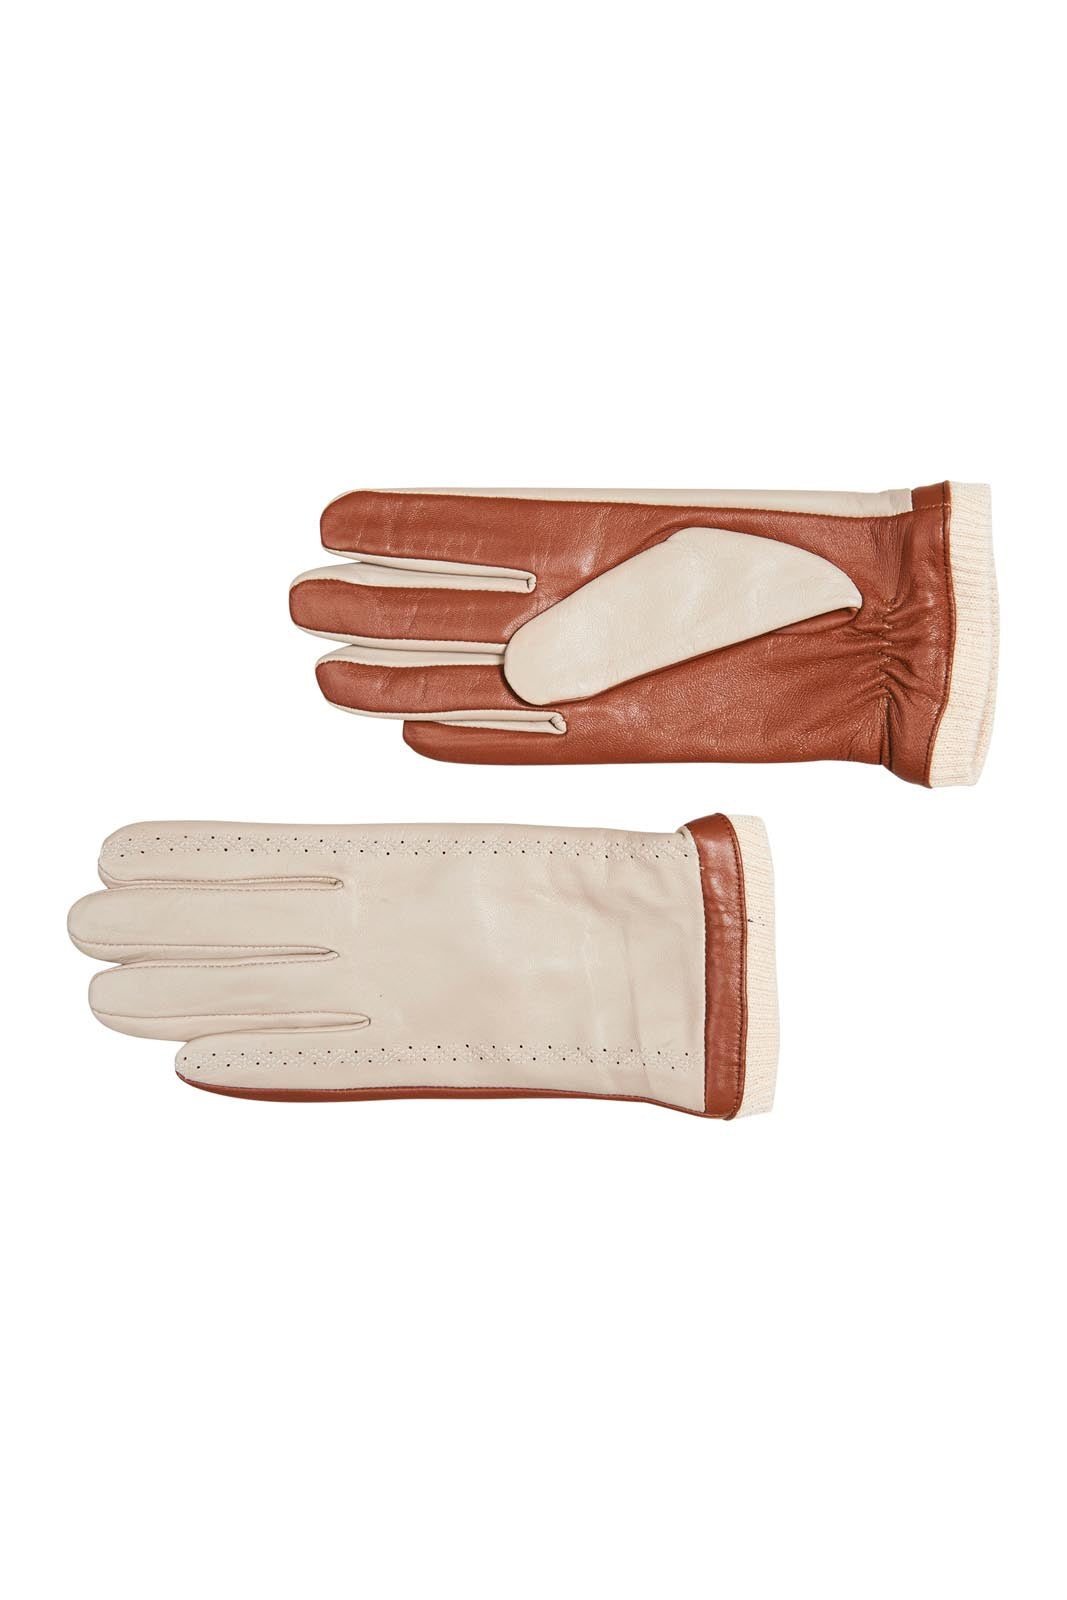 Mona Glove - Tan - eb&ive Glove